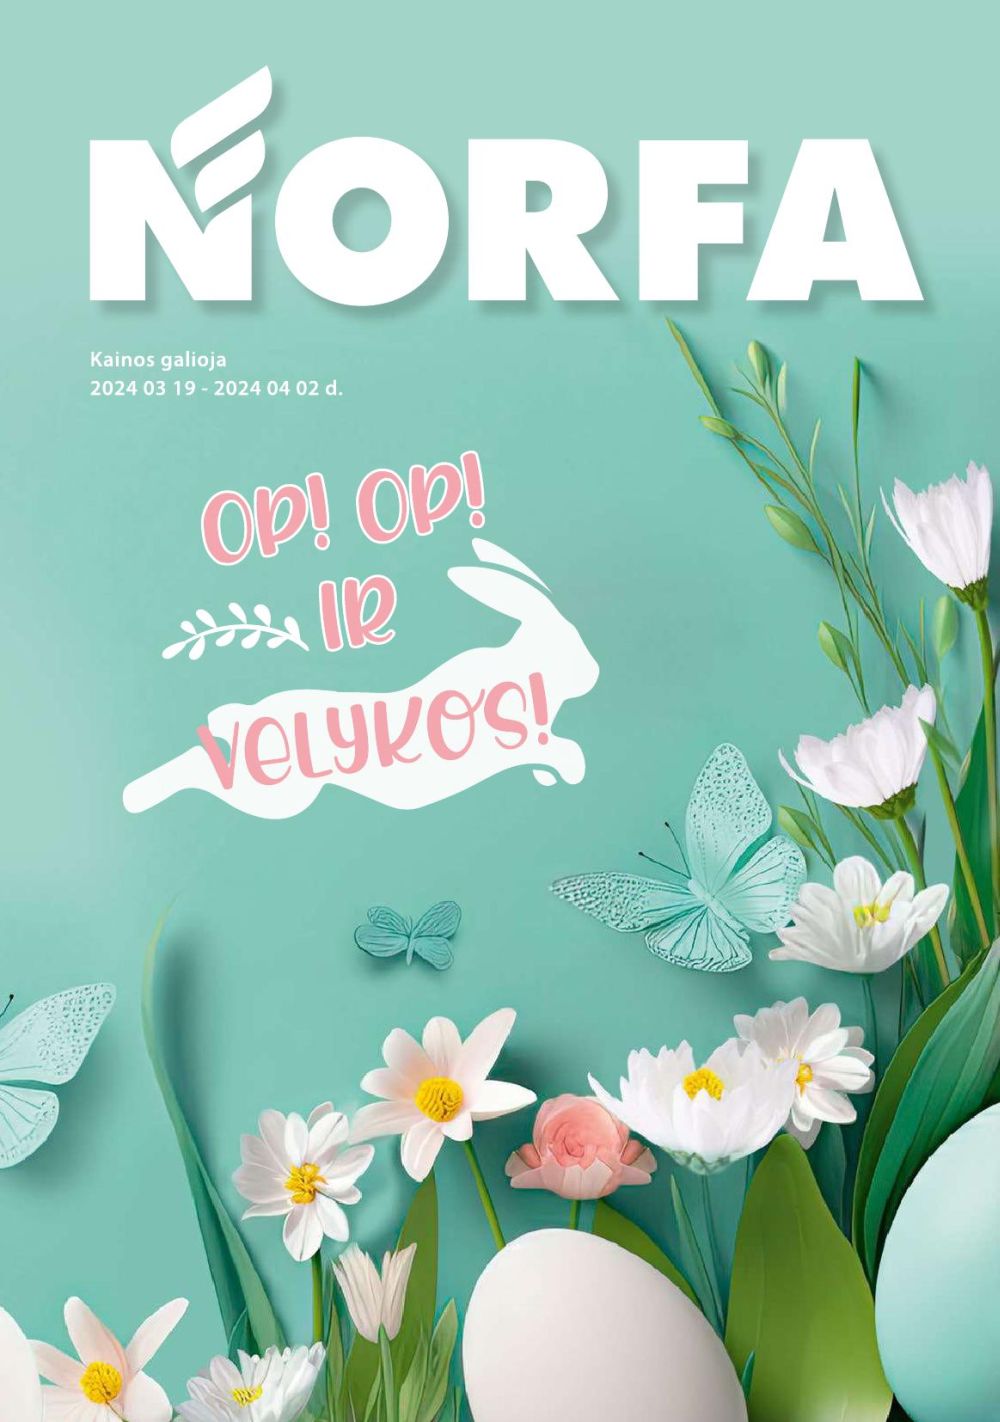 norfa - NORFA - OP! OP! IR VELYKOS! (2024 03 19 - 2024 04 02) - page: 1